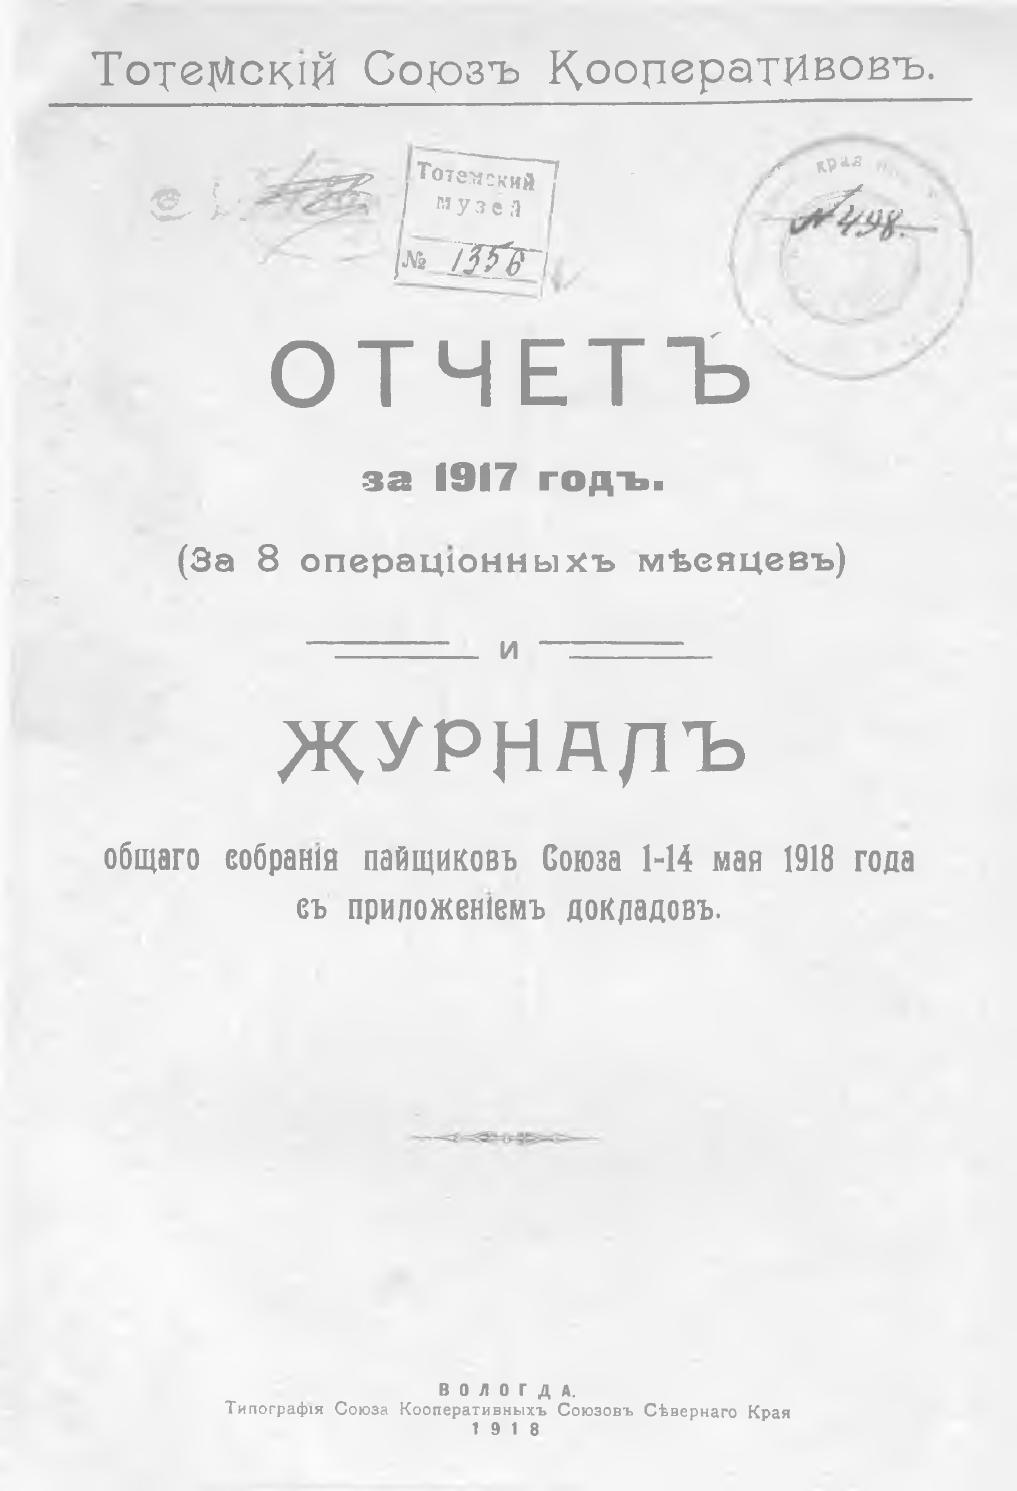 Отчет за 1917 год (За 8 операционных месяцев) и журналы общего собрания пайщиков  Союза